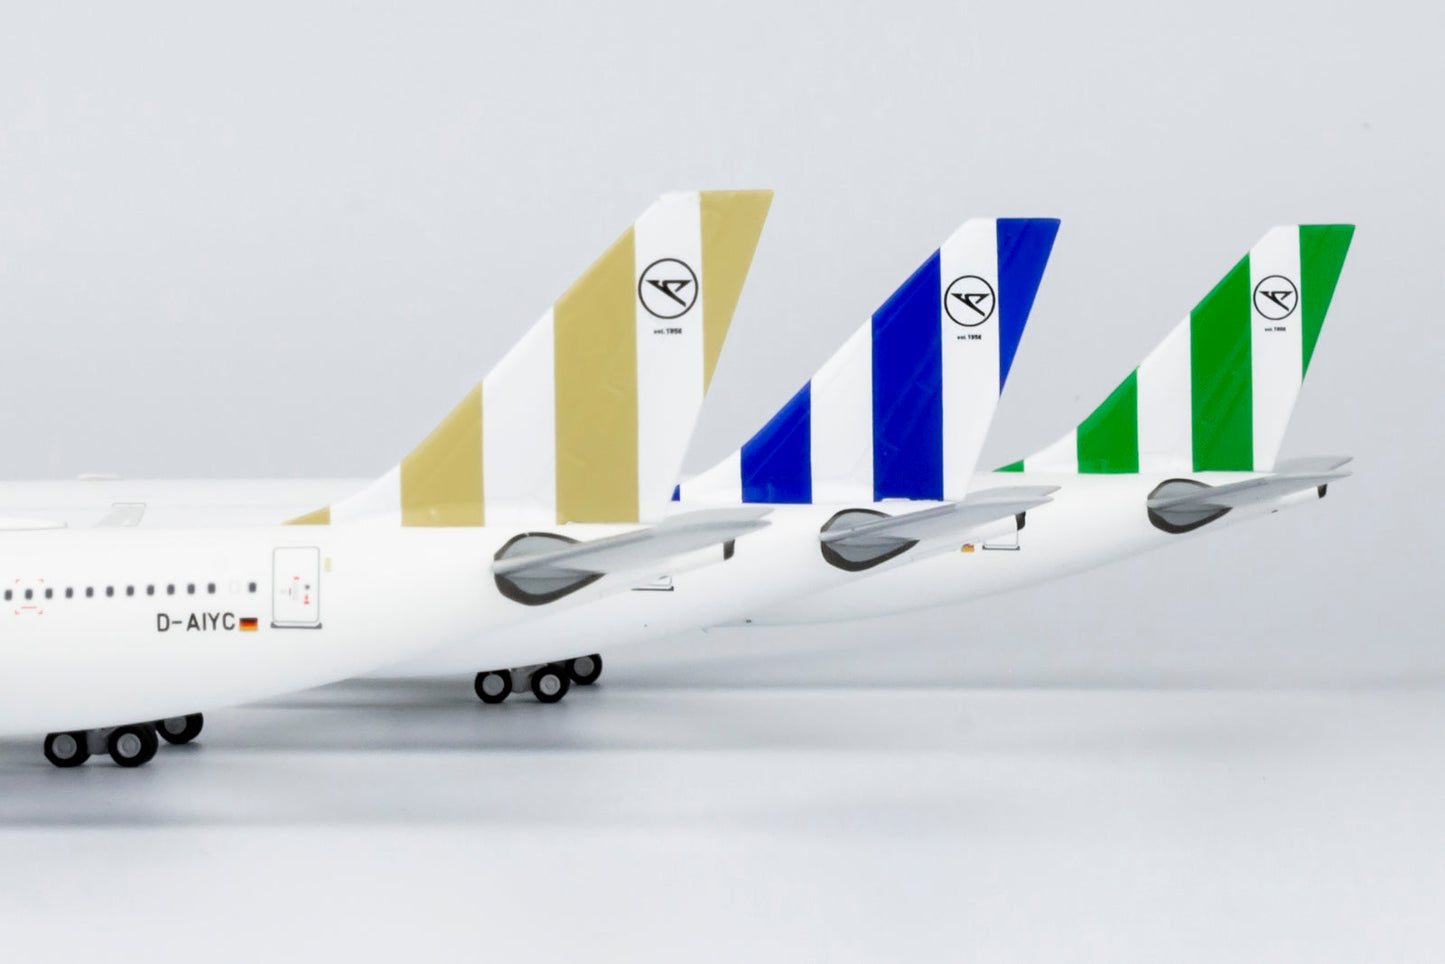 1/400 Condor A330-200 "Blue Tail" NG Models 61052